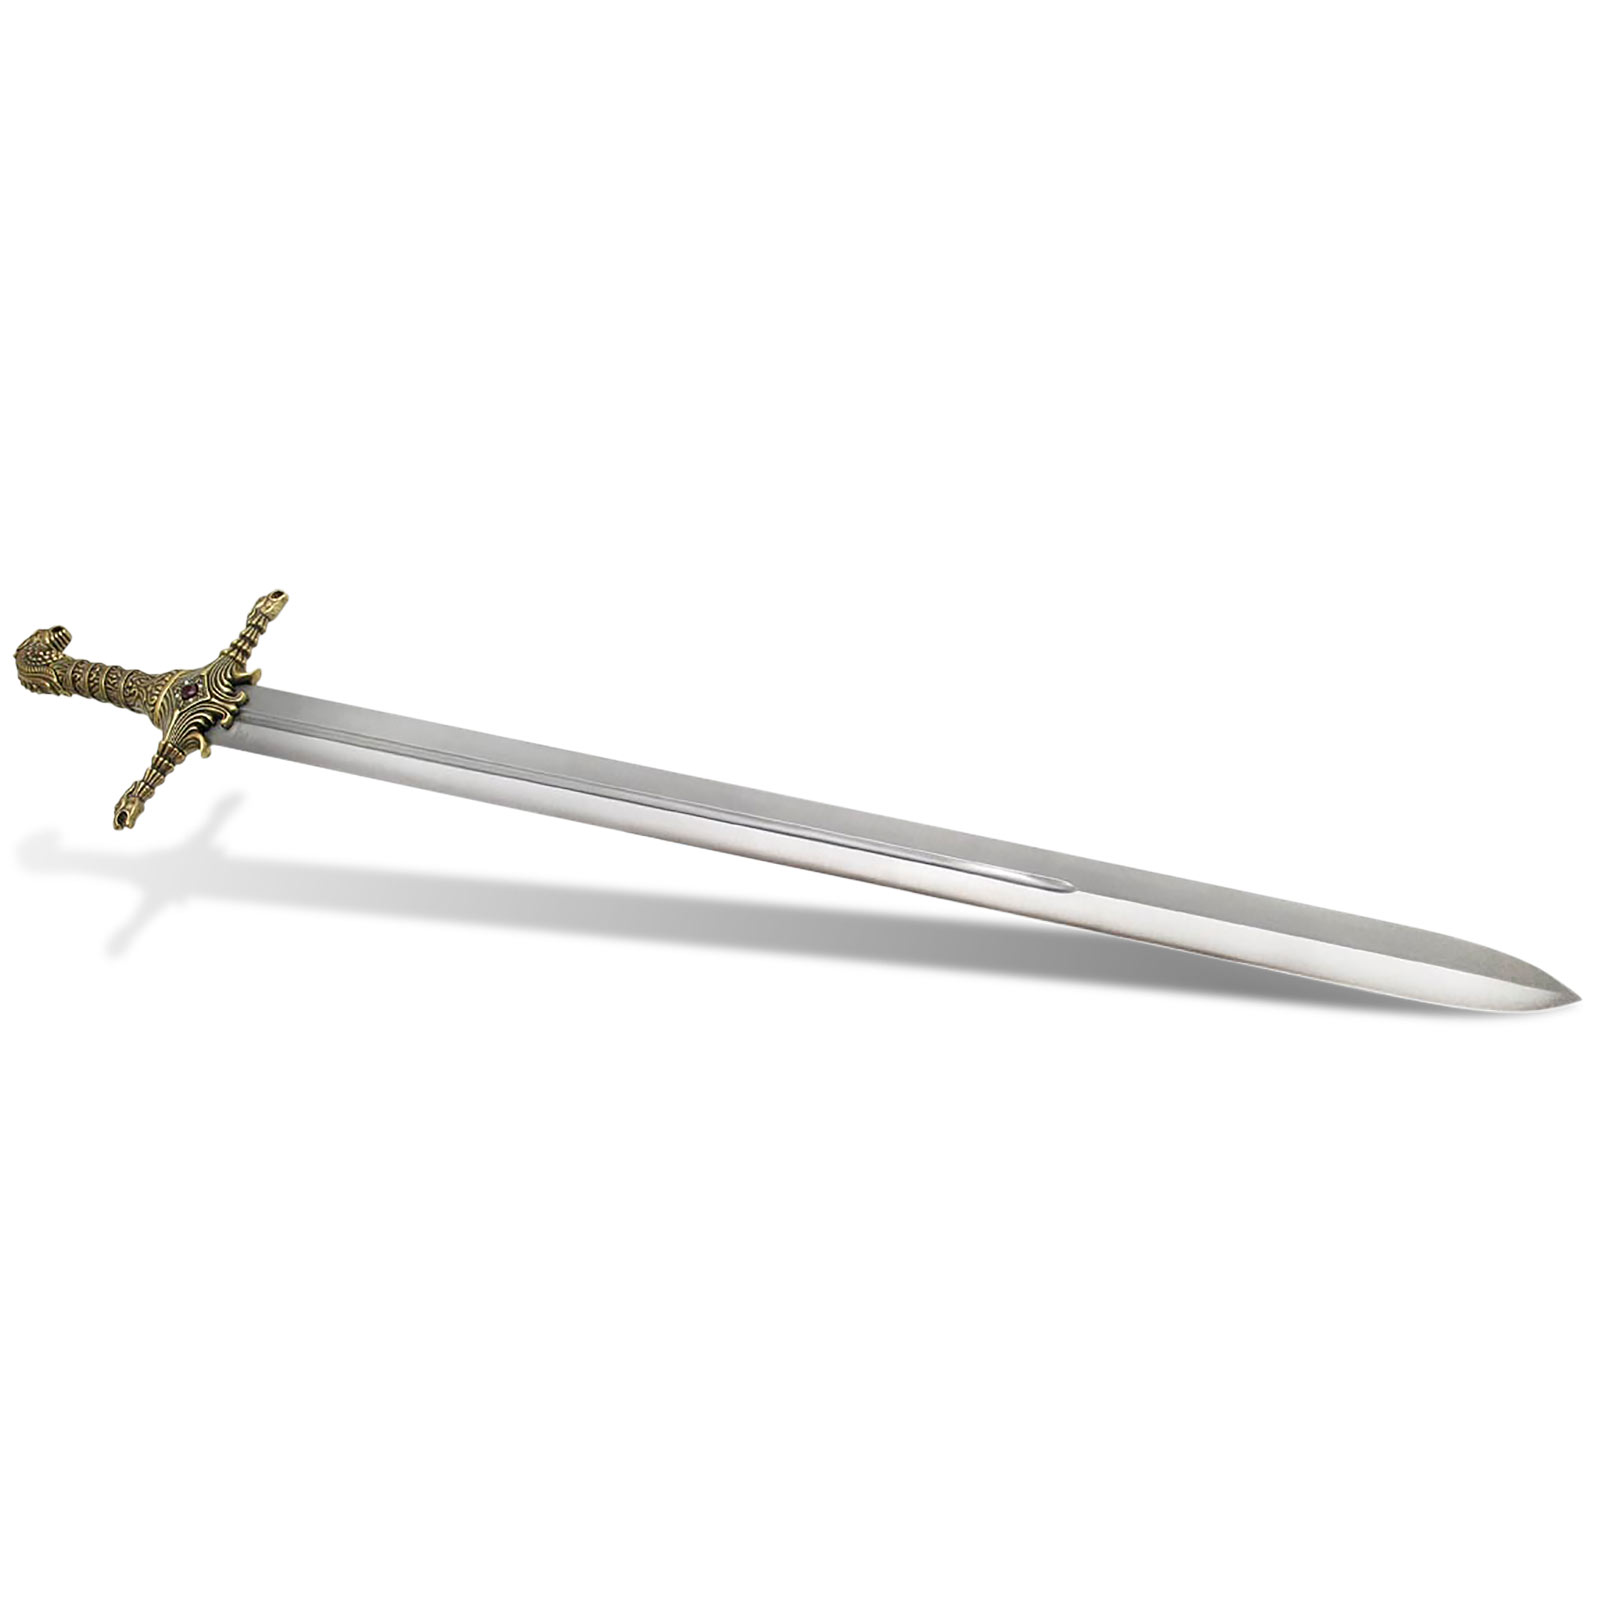 Game of Thrones - Het zwaard van Brienne Of Tarth's Oathkeeper